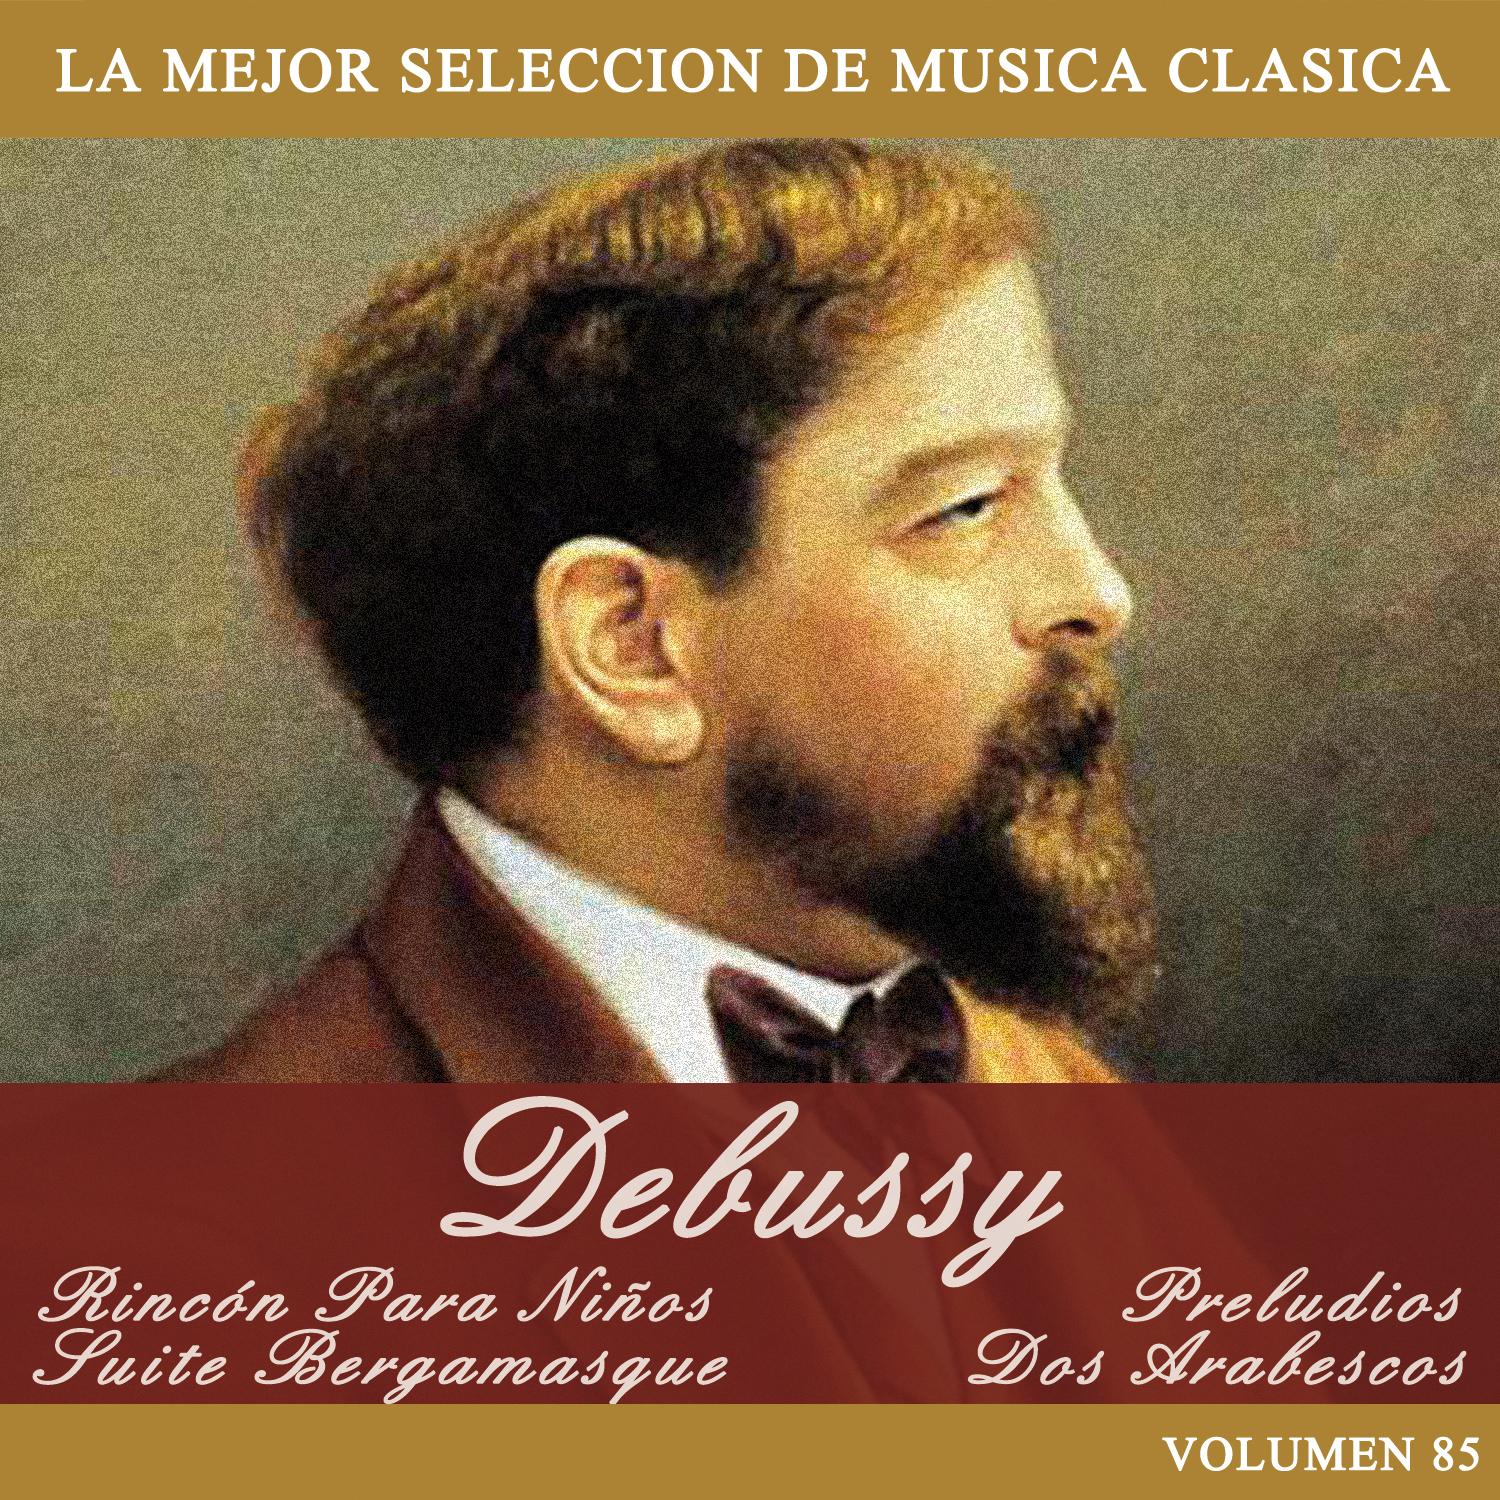 Debussy: Rinco n Para Ni os  Suite Bergamasque  Preludios  Dos Arabescos